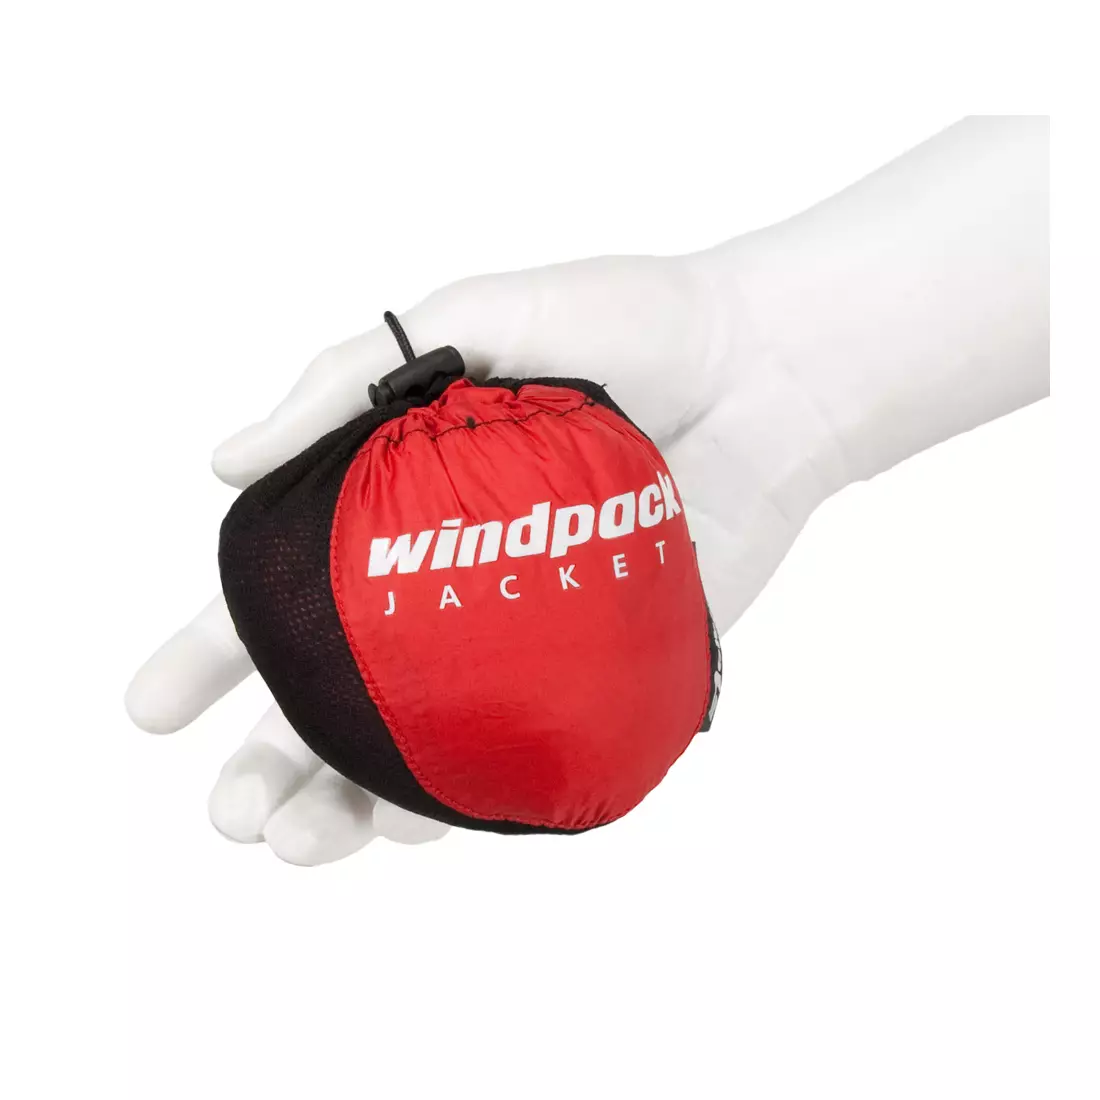 NEWLINE WINDPACK JACKET - ultraľahká športová vetrovka 14176-040, farba: červená